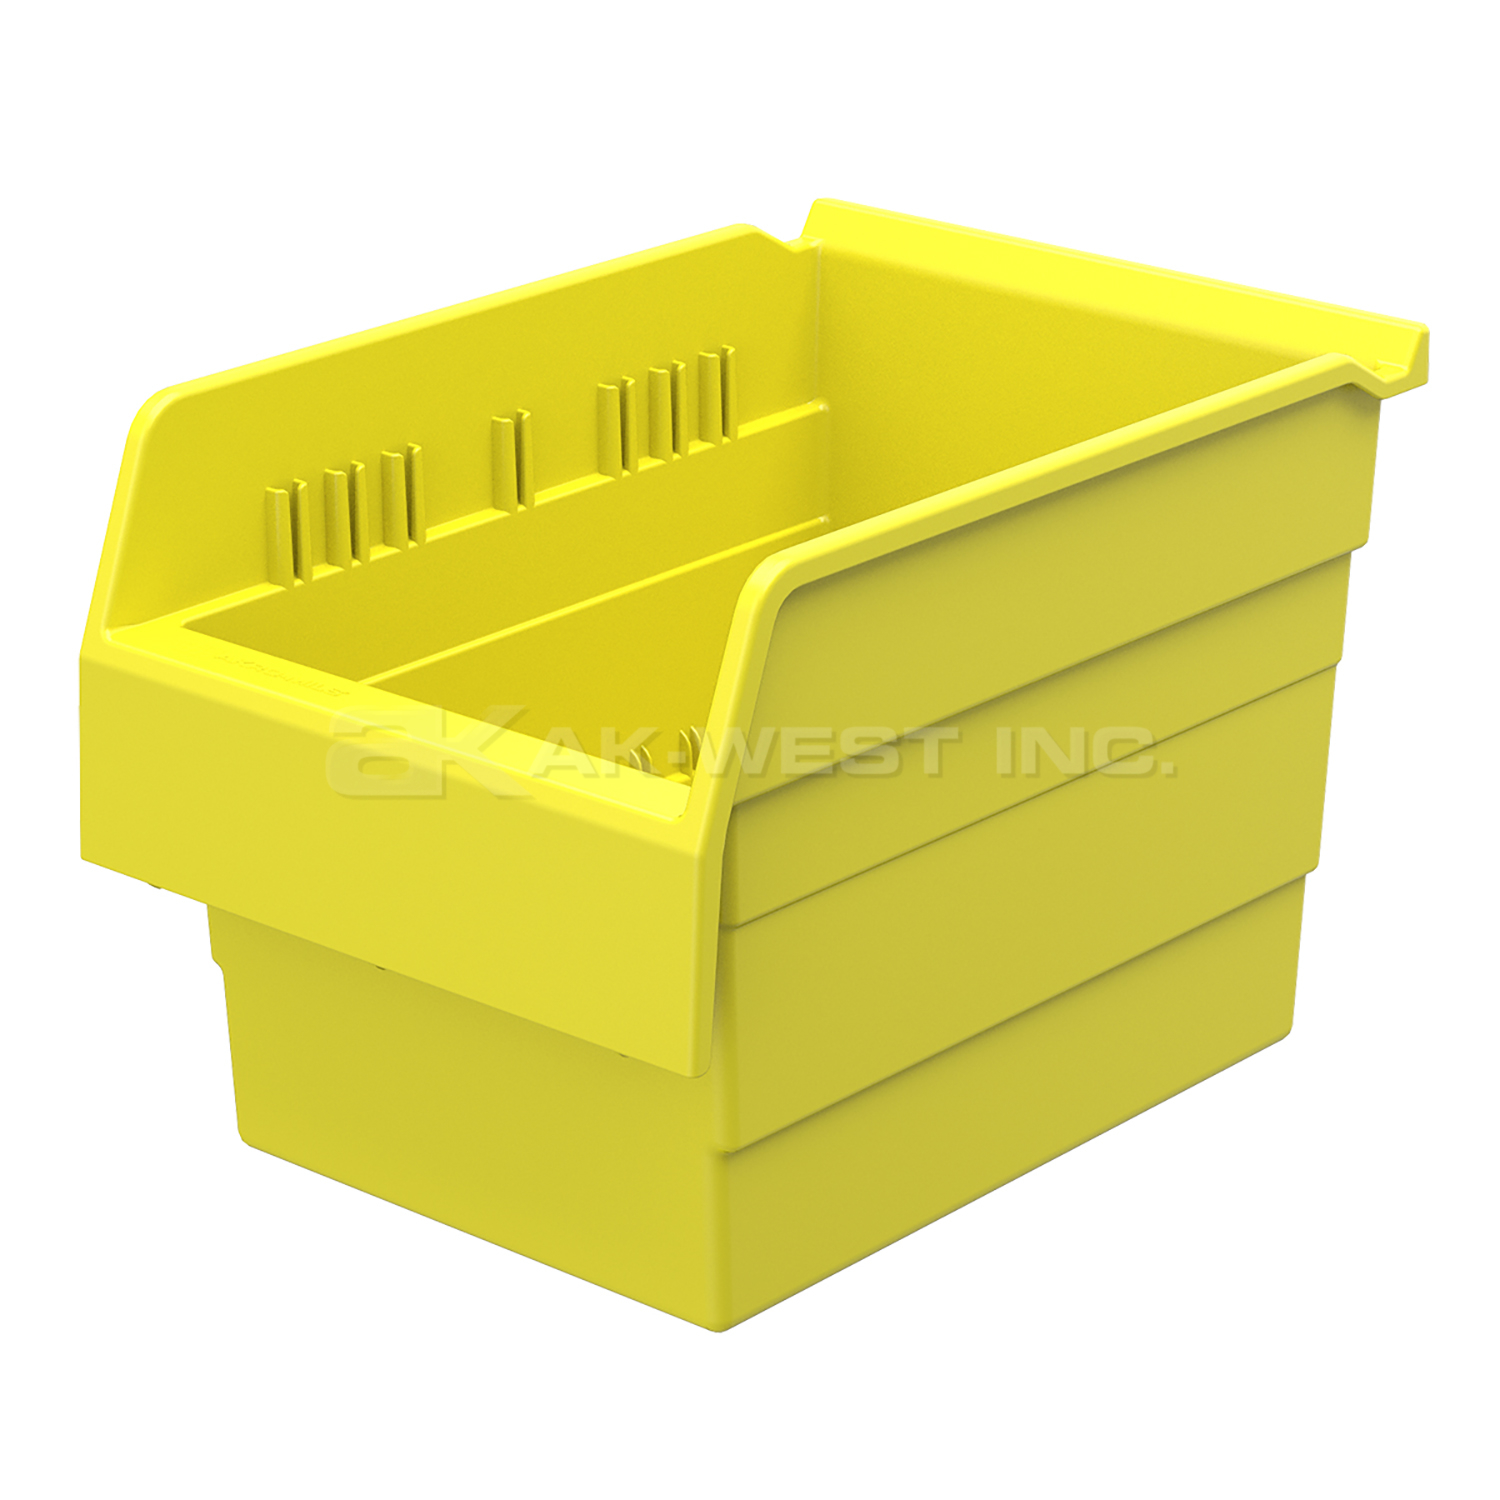 Yellow, 11-5/8" x 8 2/7" x 8" Shelf Bin (8 Per Carton)